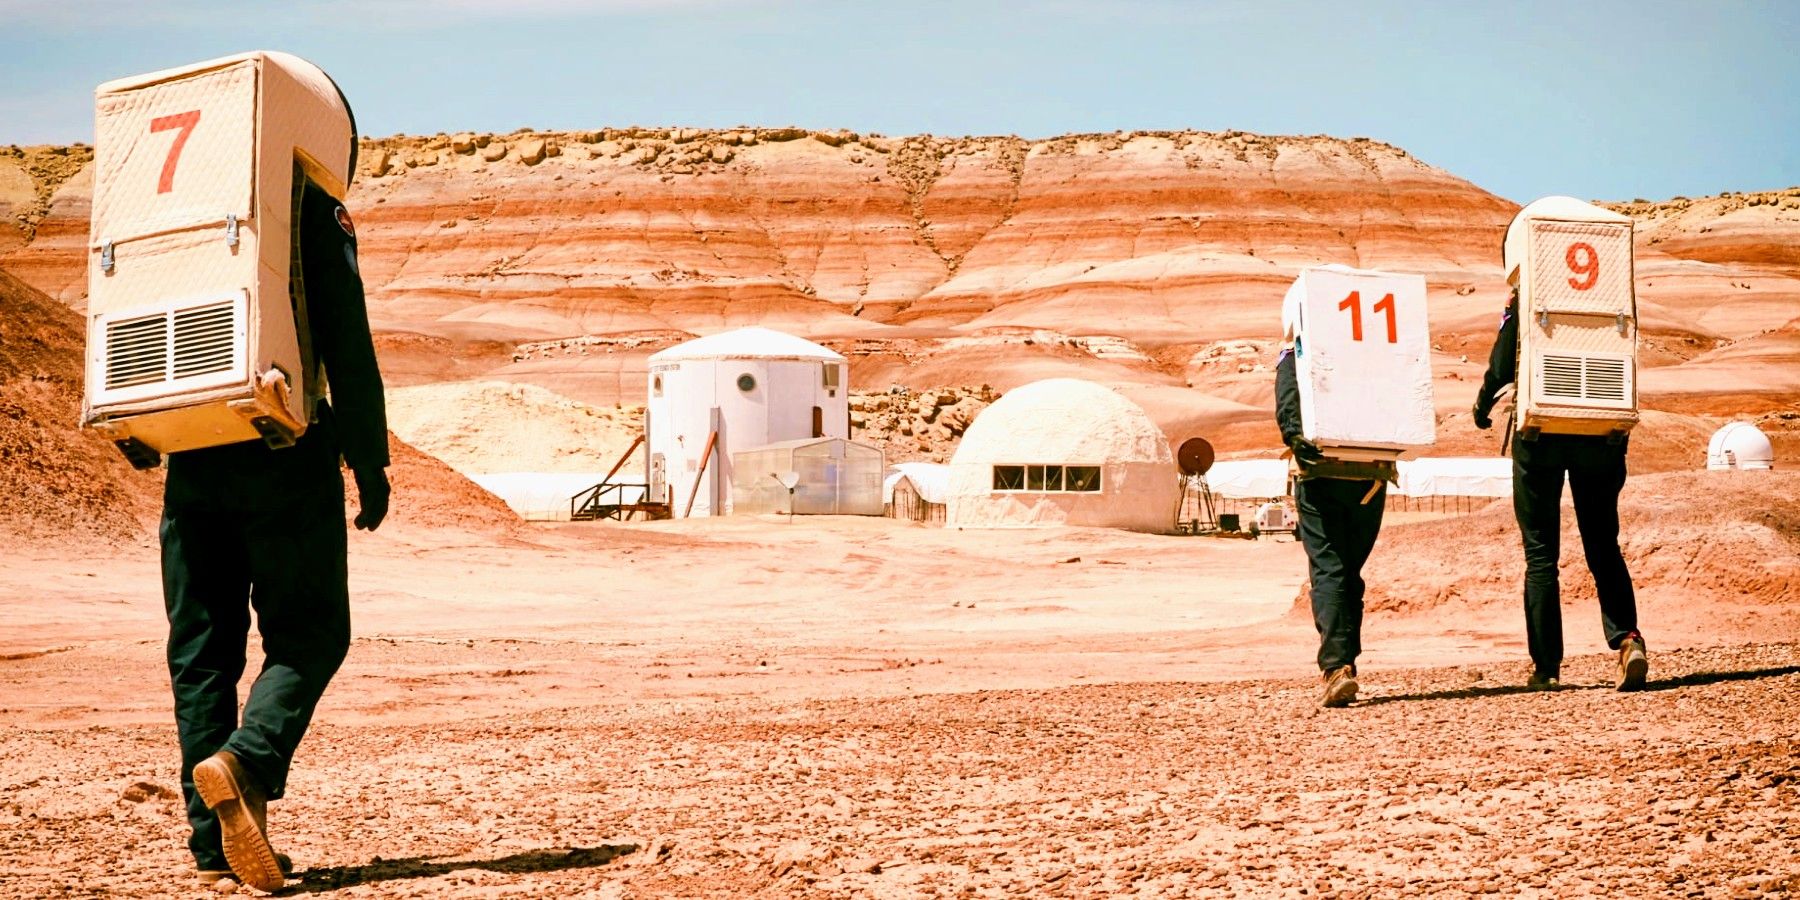 Base de simulación de Marte interrumpida por turistas y drones